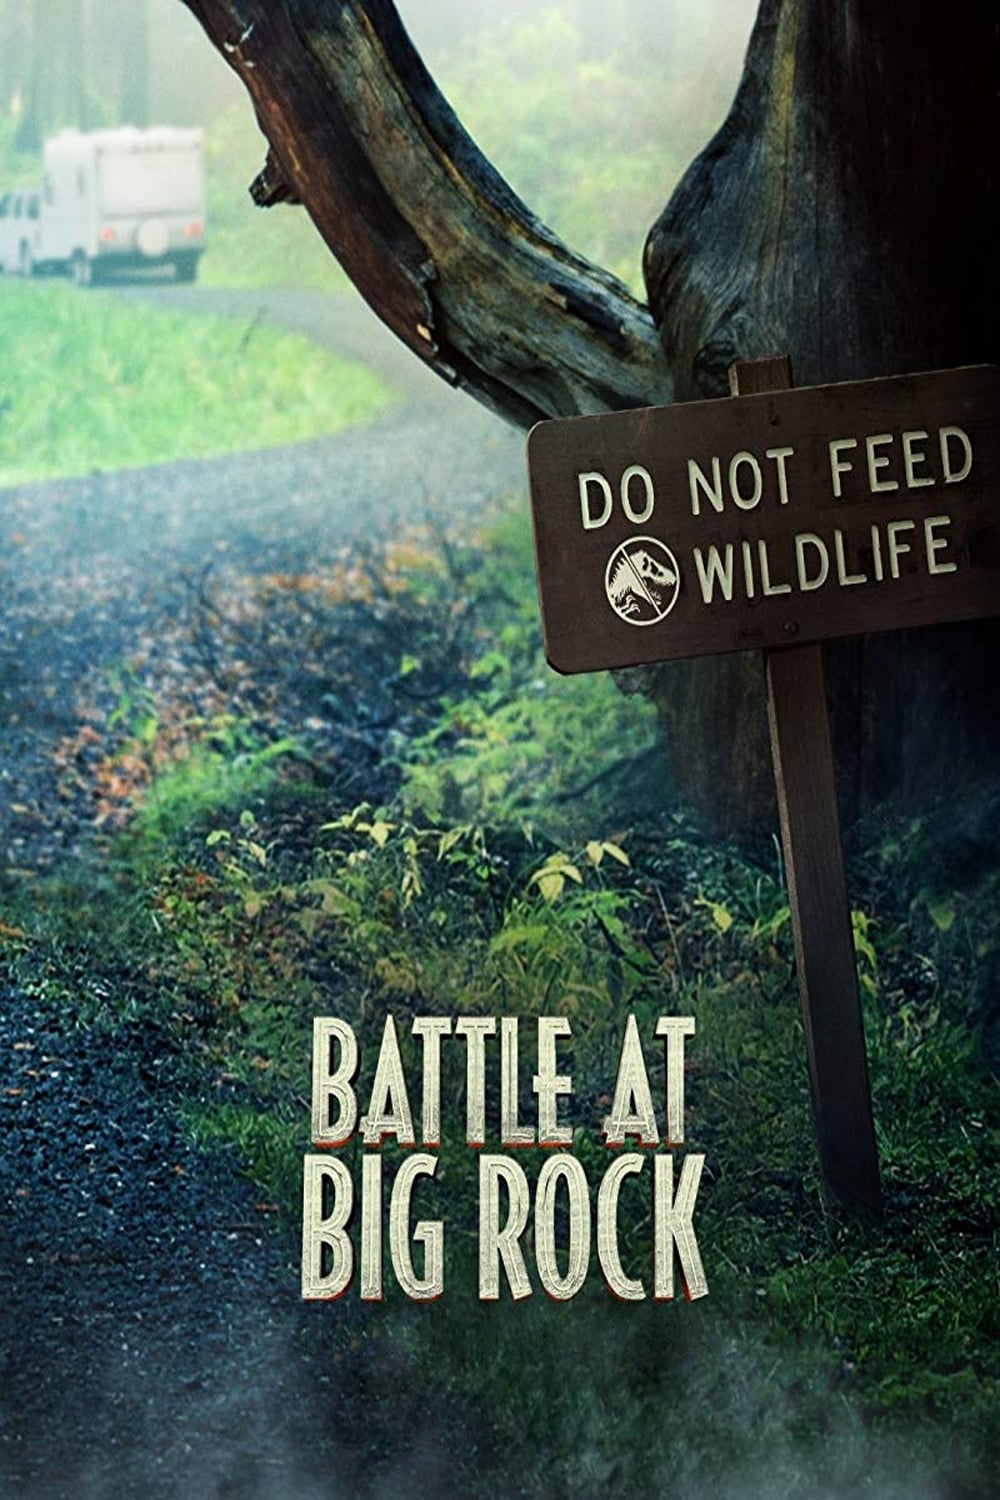 Caratula de Battle at Big Rock (Jurassic World: Batalla en Big Rock) 